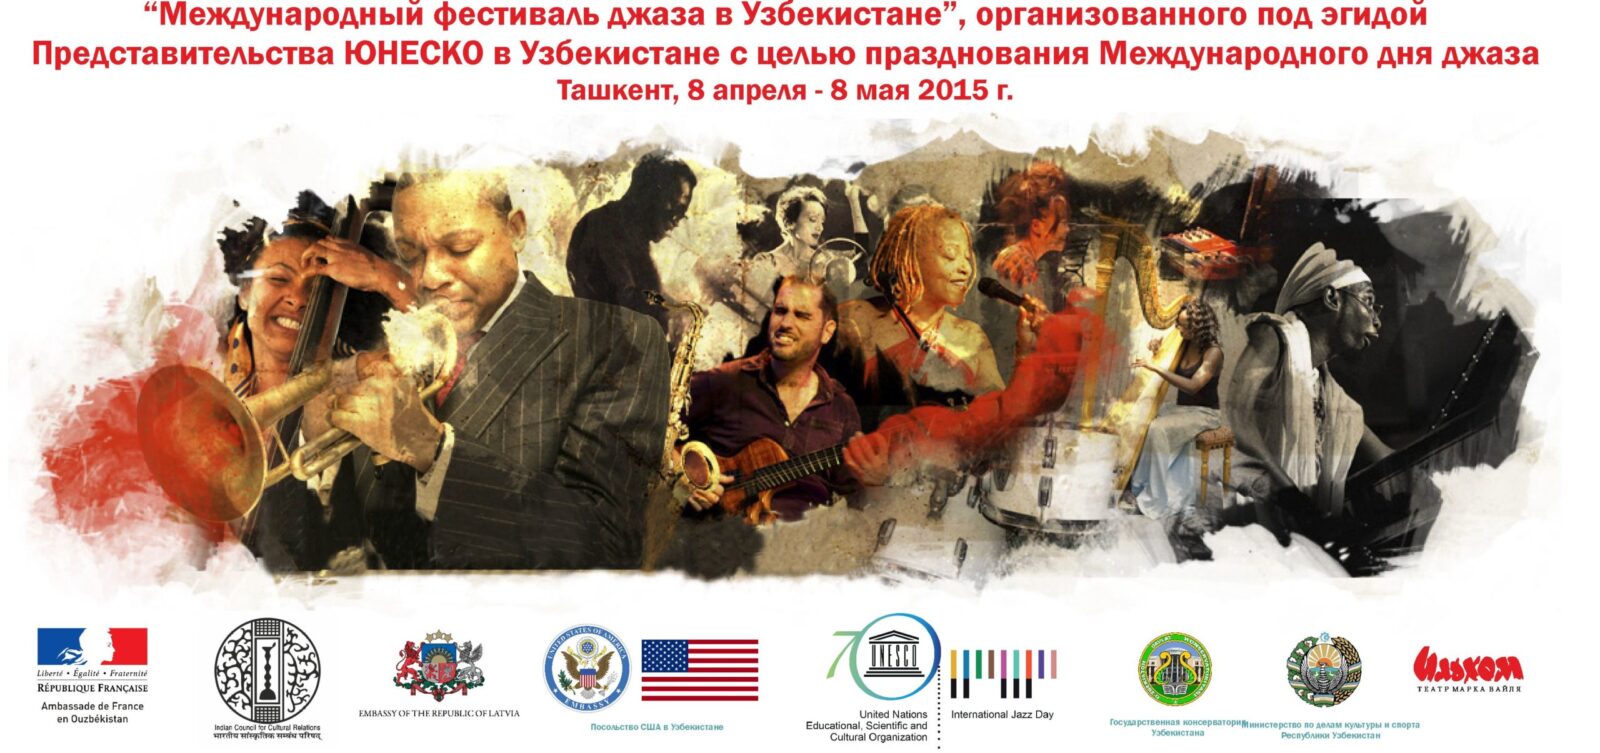 Международный фестиваль джаза пройдет в Ташкенте